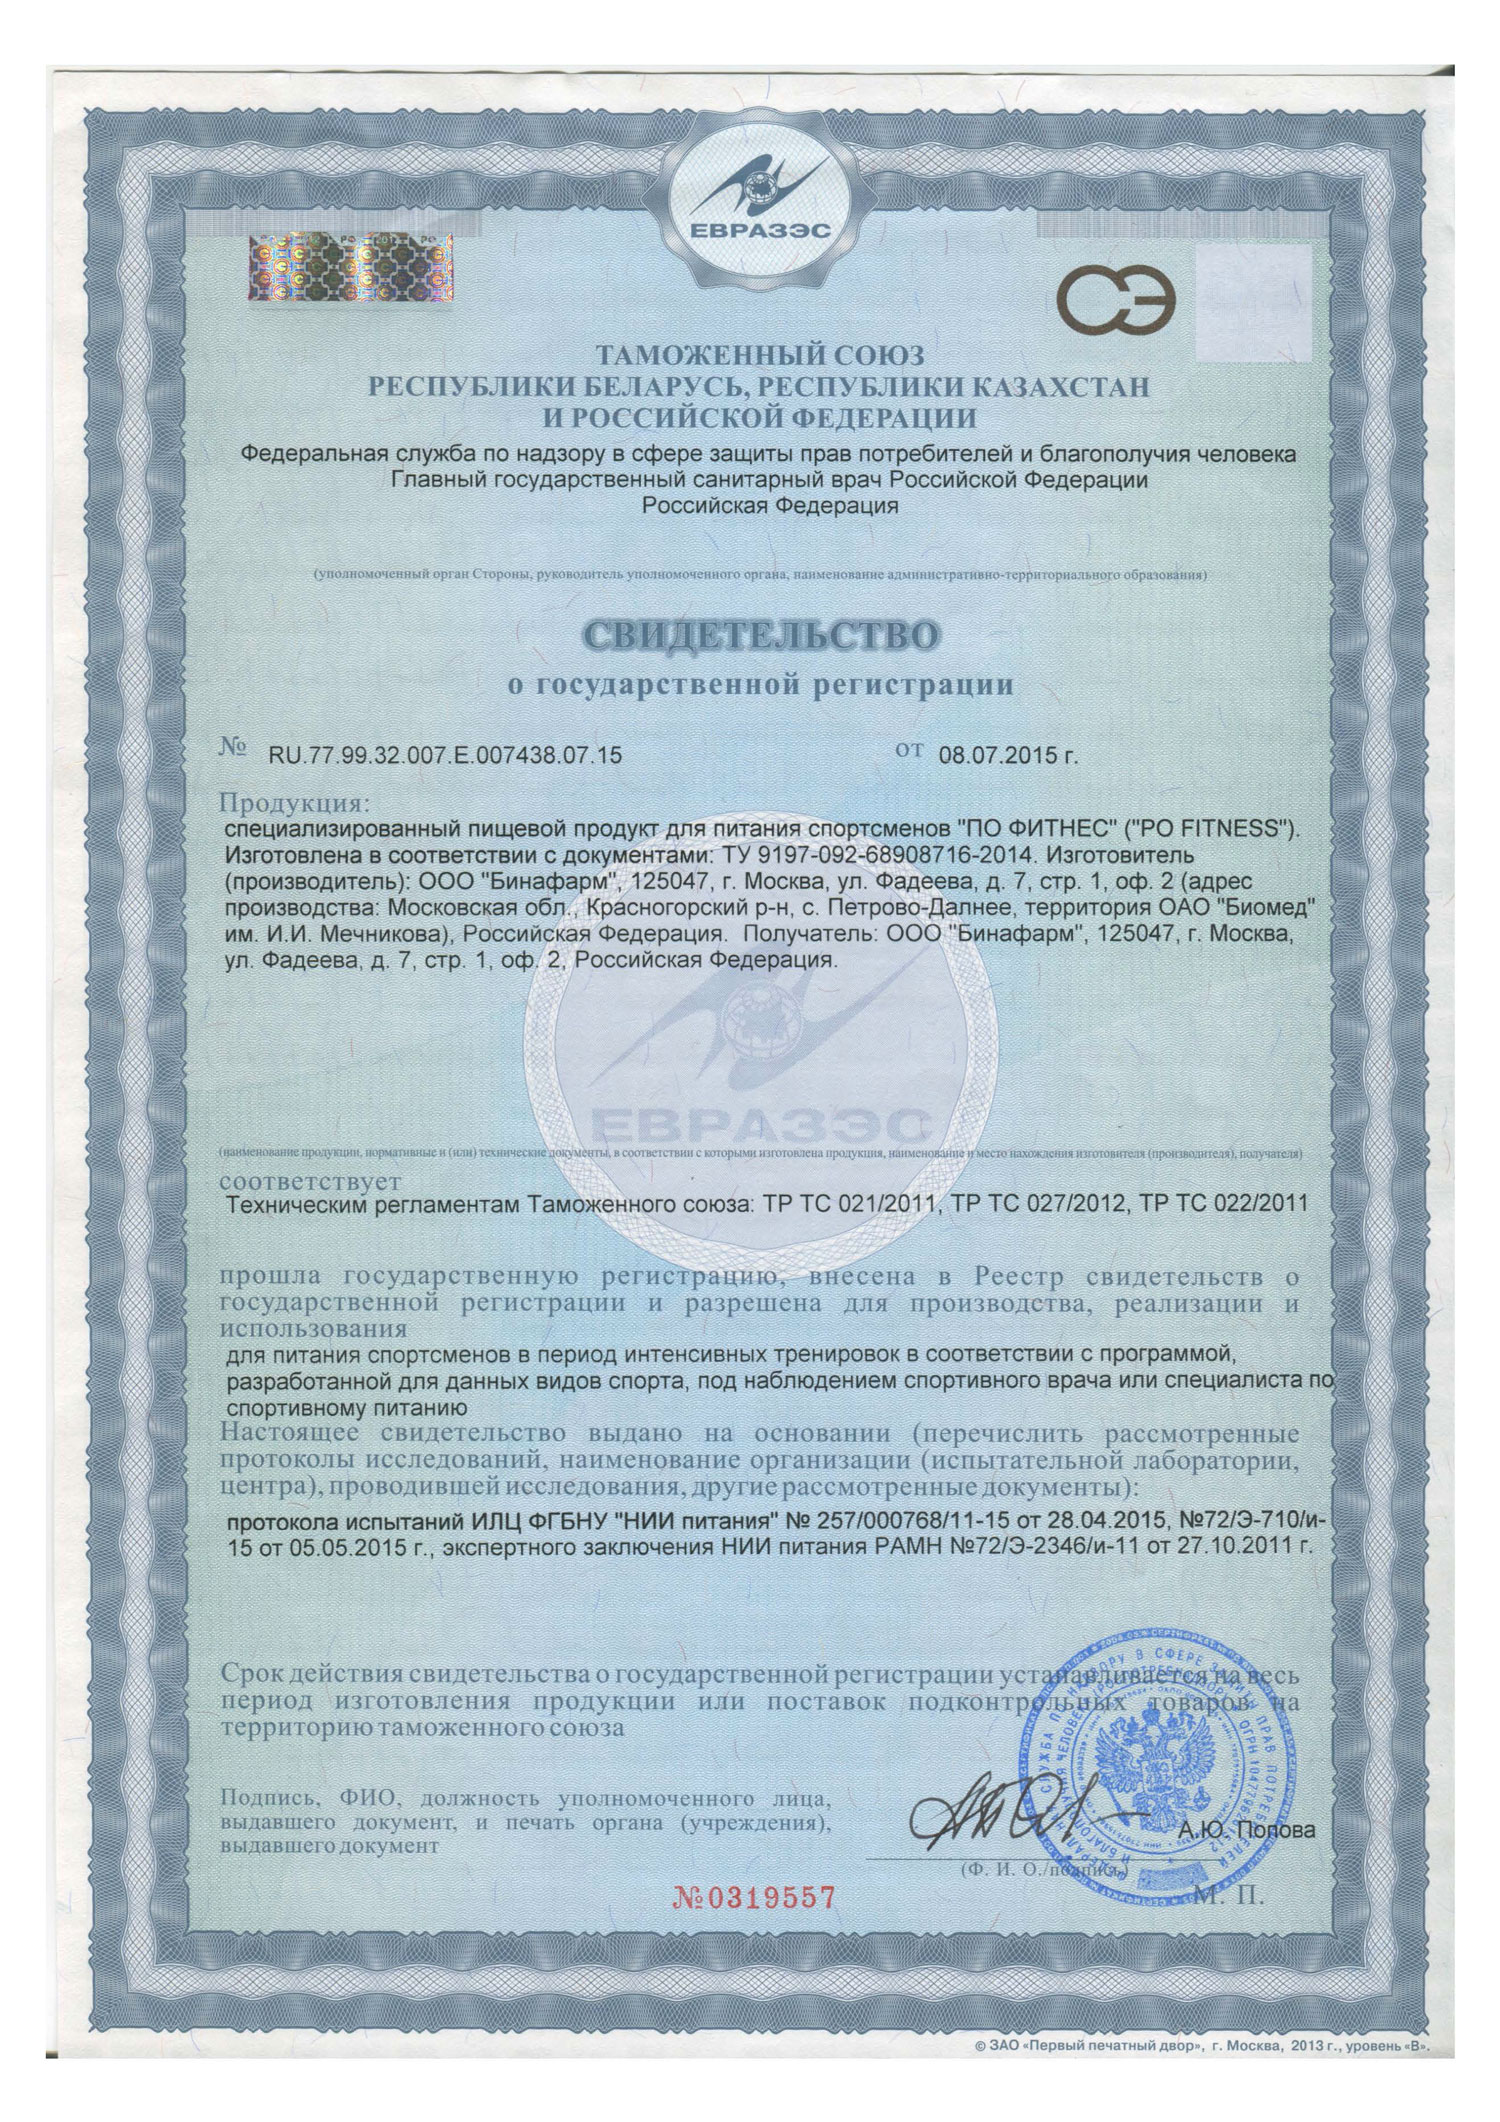 Сертификат ПО Фитнесс  